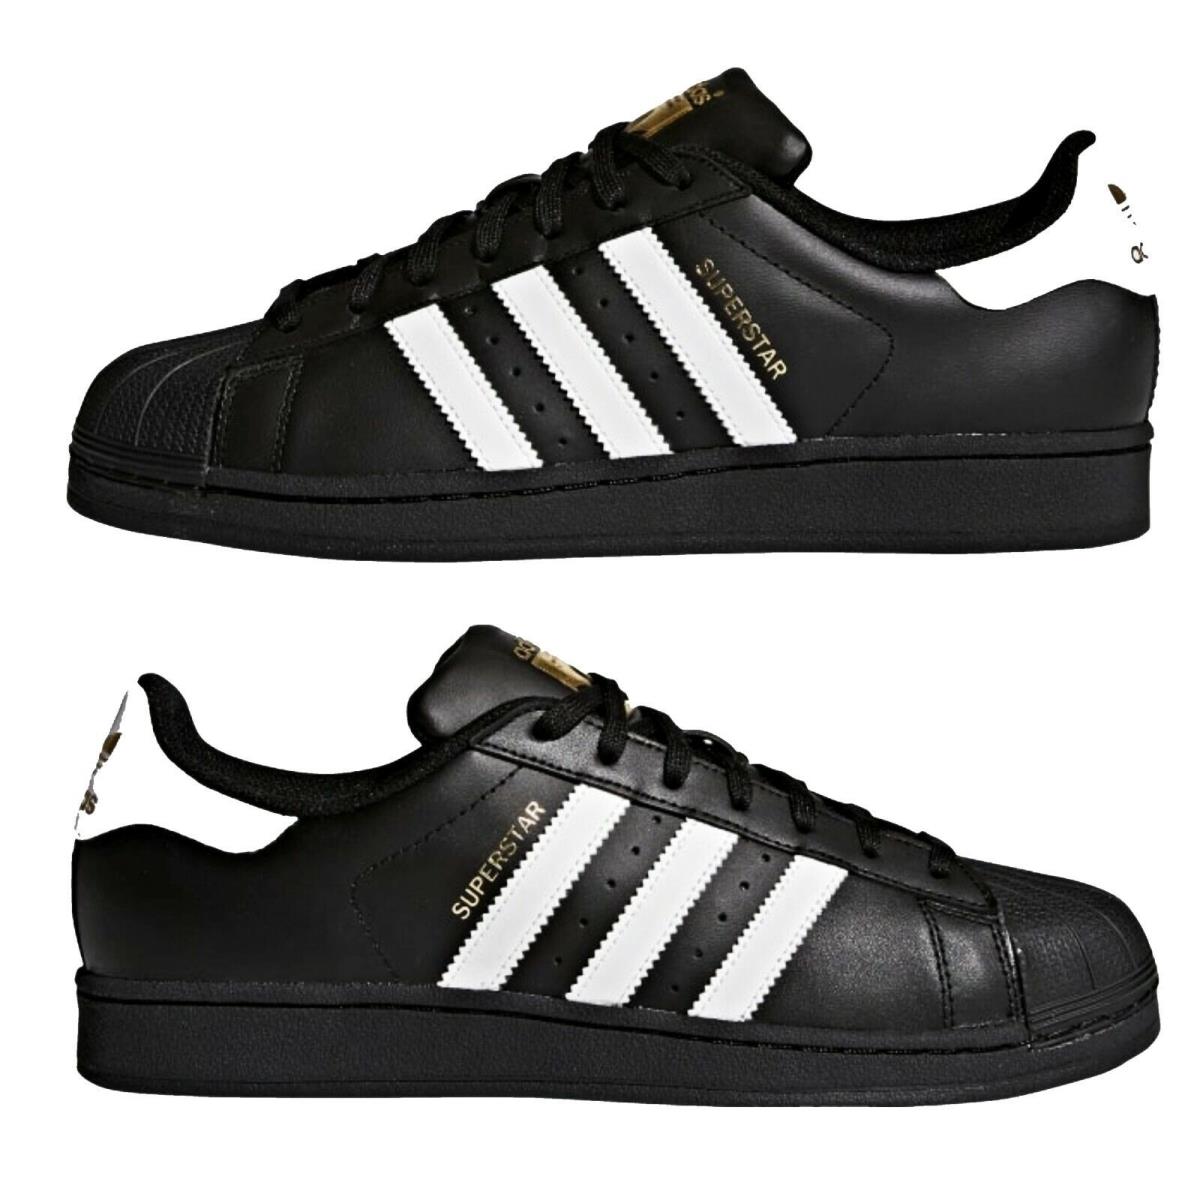 Adidas Originals Superstar Foundation Mens Shoes B27140 - Black/white